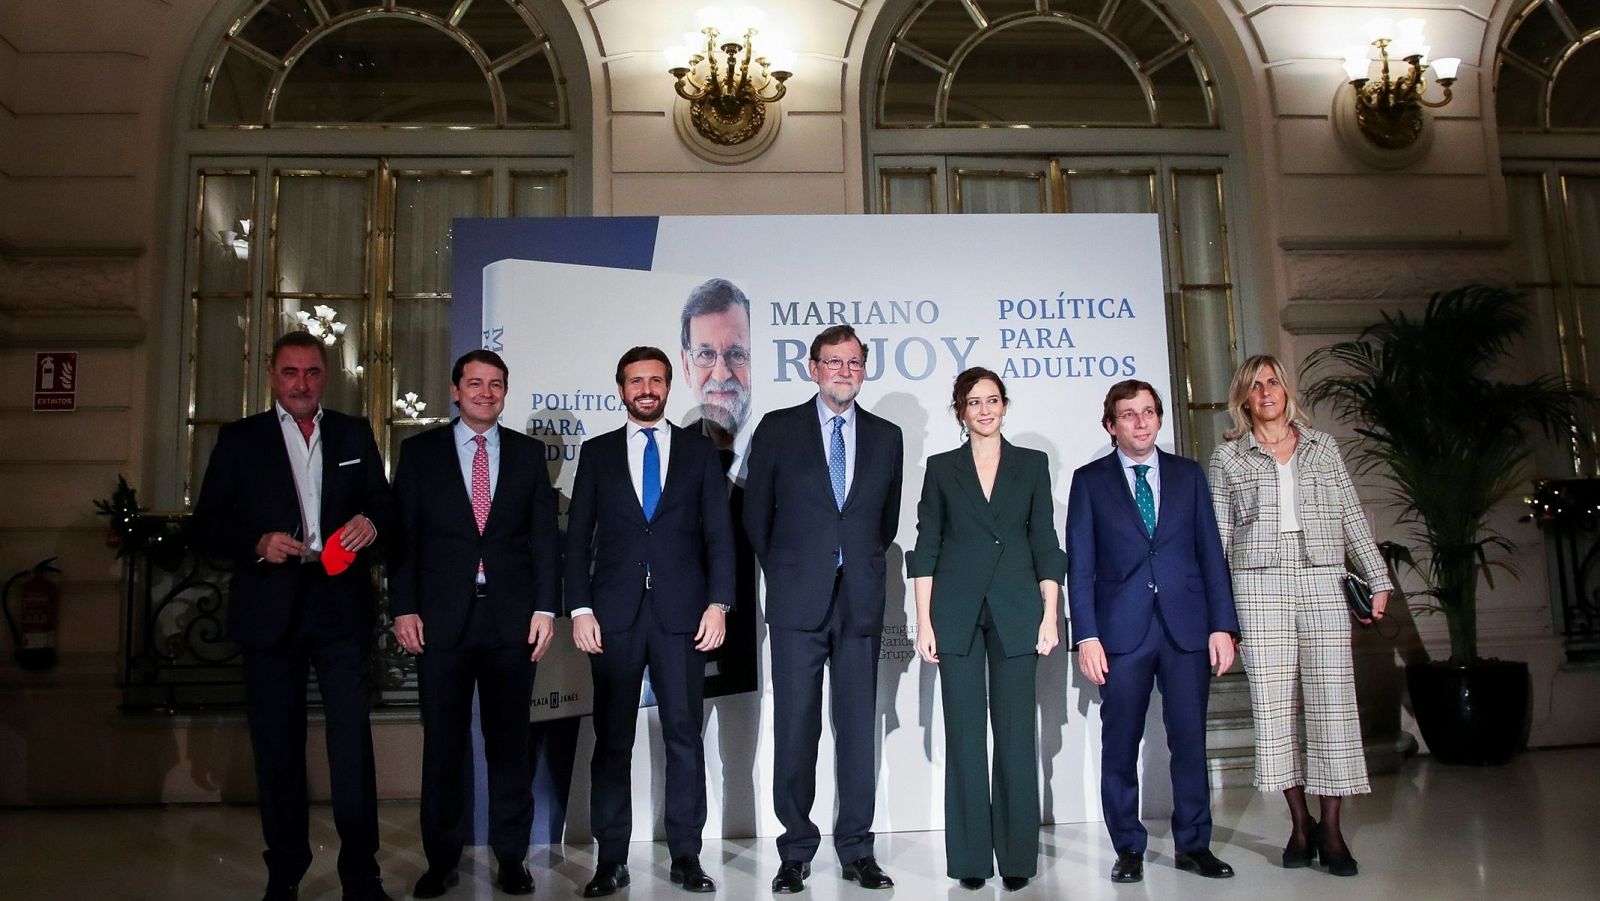 Rajoy 'une' a Ayuso y Casado en mitad de la crisis interna